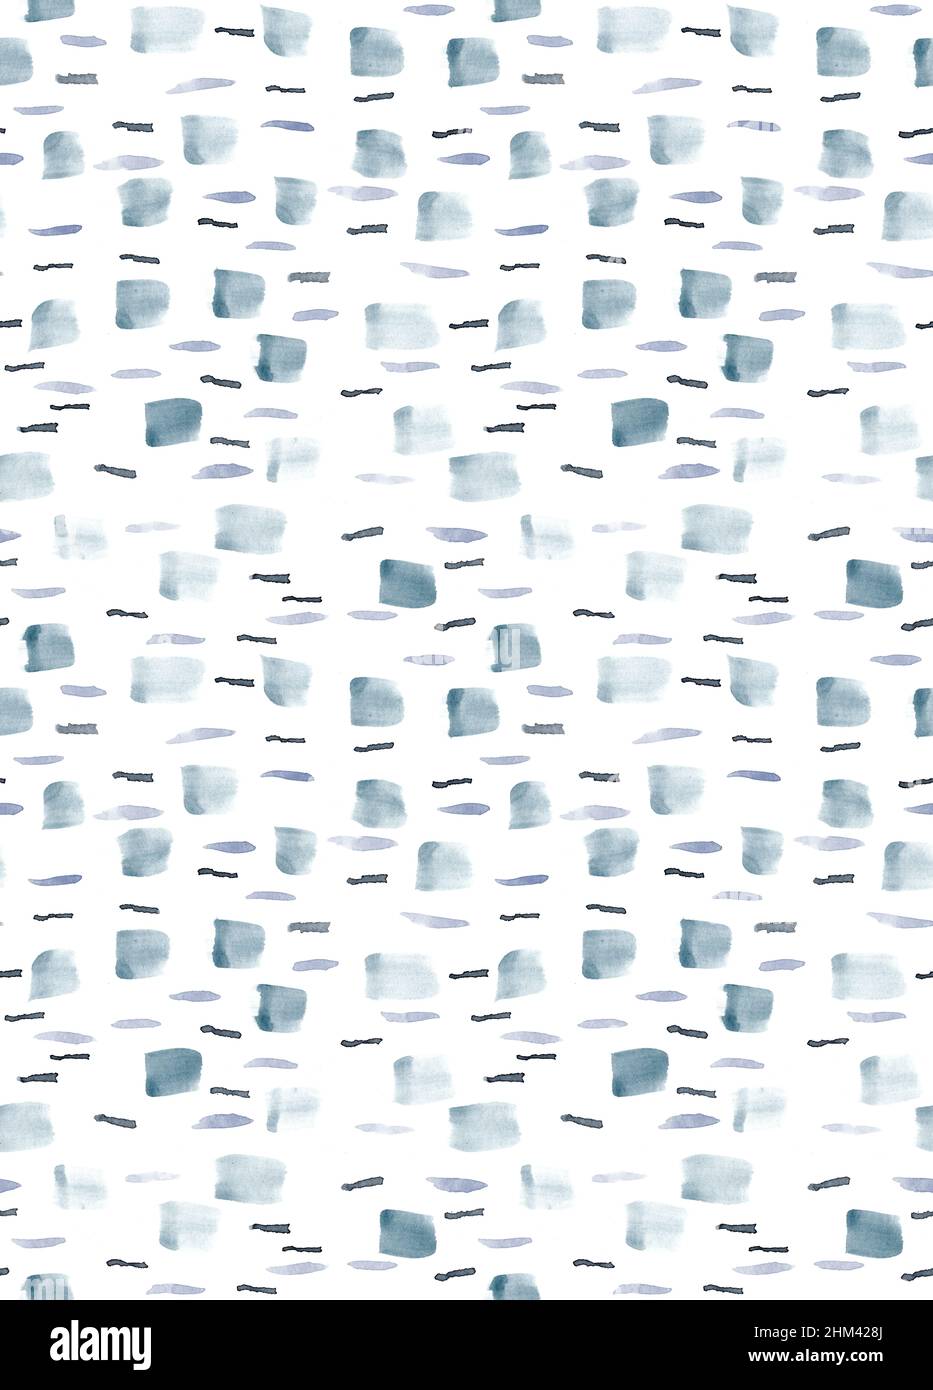 Aquarell nahtlose Muster aus abstrakter Birkenrinde Textur in grau, grau und blau Farben Stockfoto